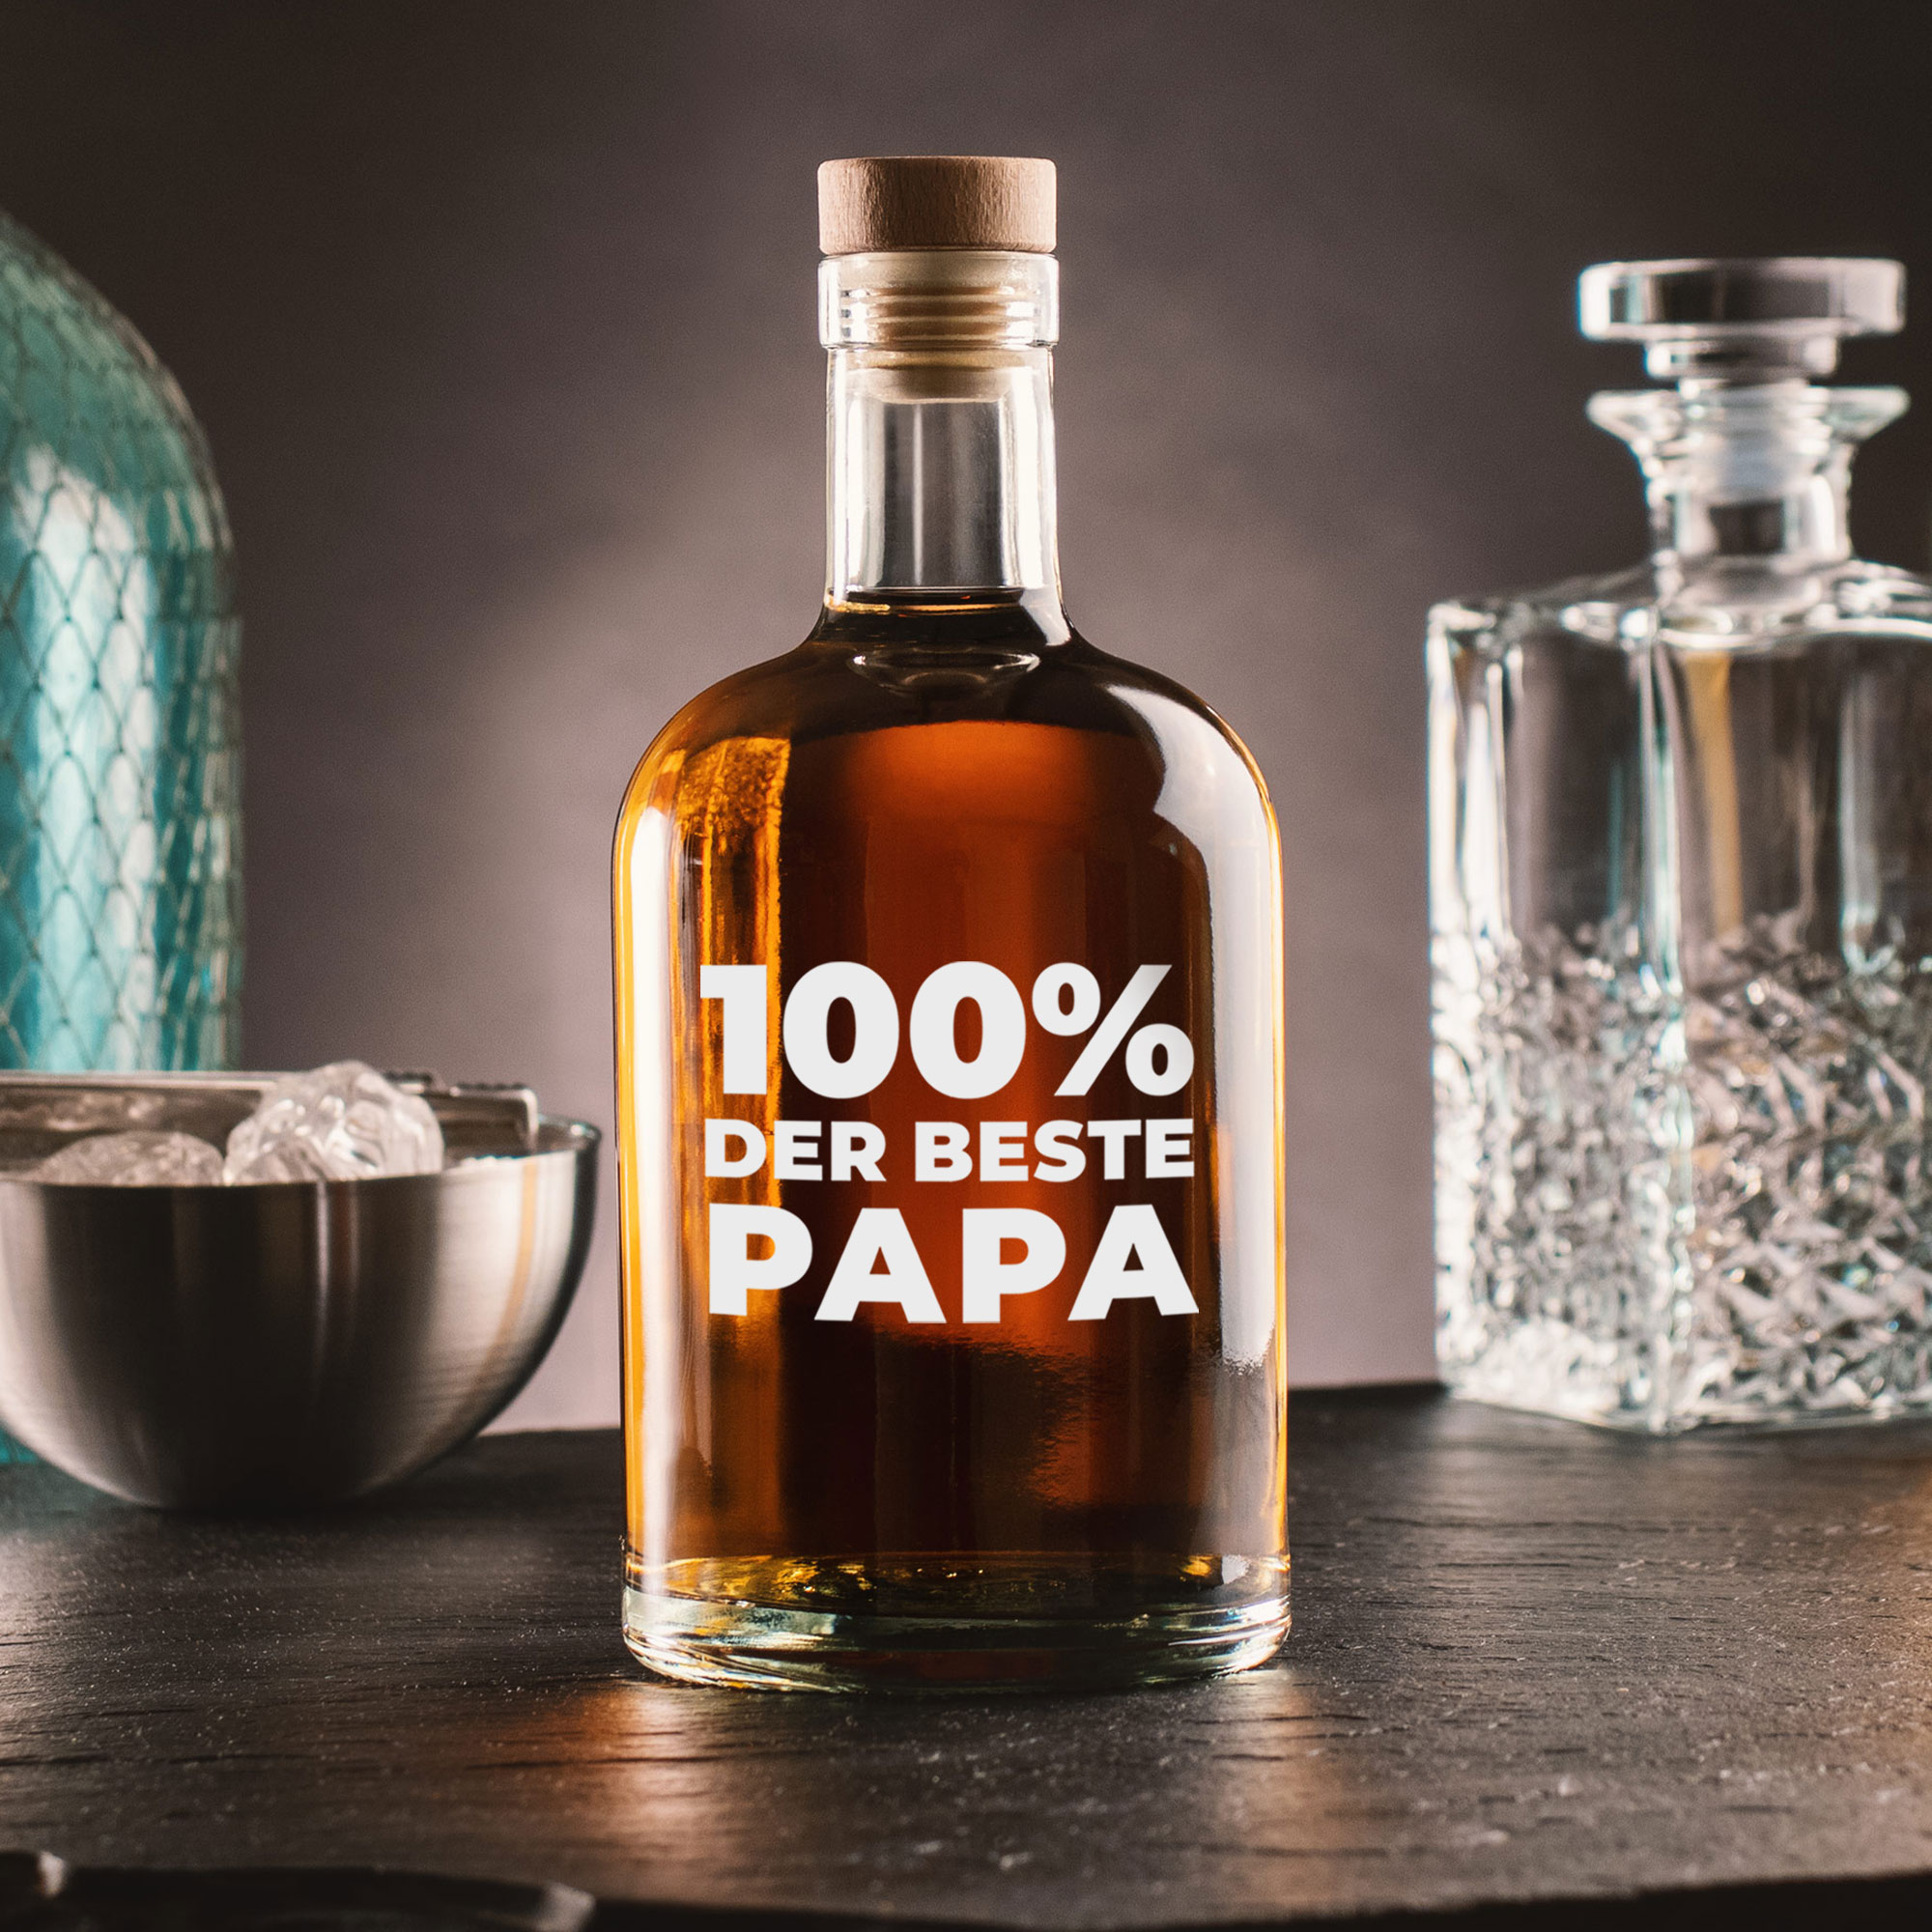 Glasflasche mit Gravur - 100% Papa